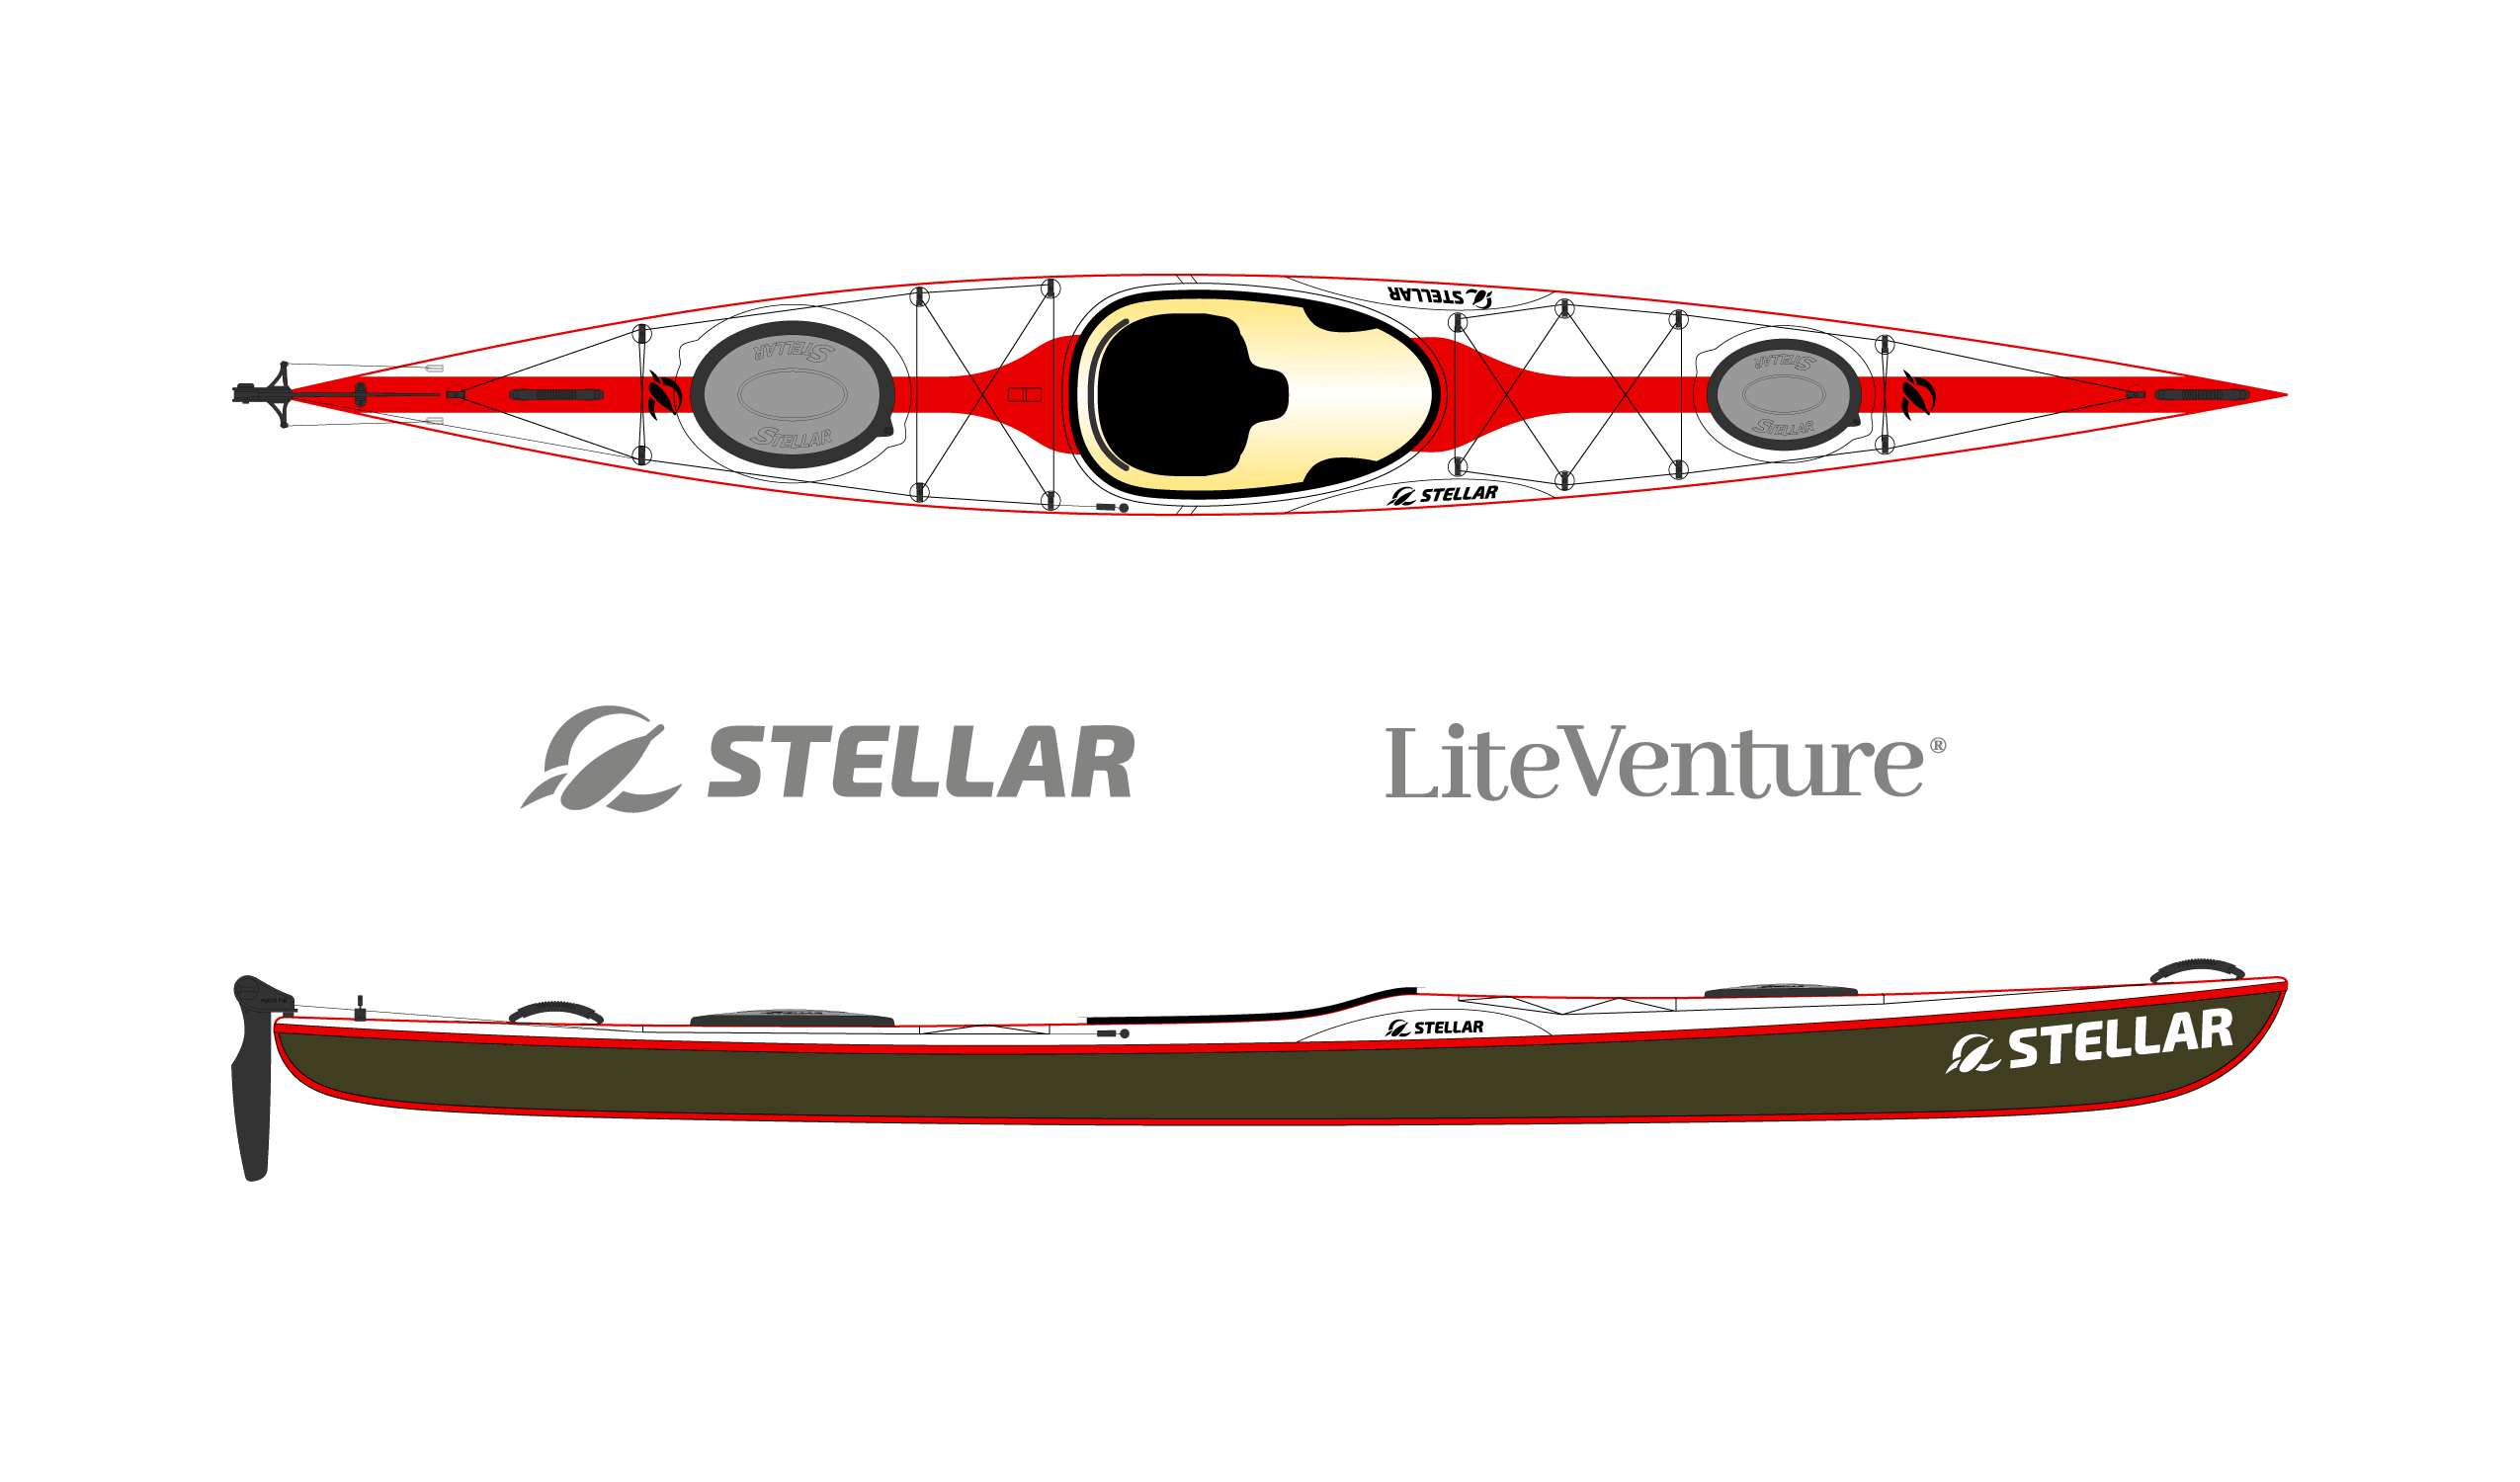 Produktbild von Kajak " S15LV Multisport-weiß rot " der Marke STELLAR Lightweight für 3240.00 €. Erhältlich online bei Lite Venture ( www.liteventure.de )